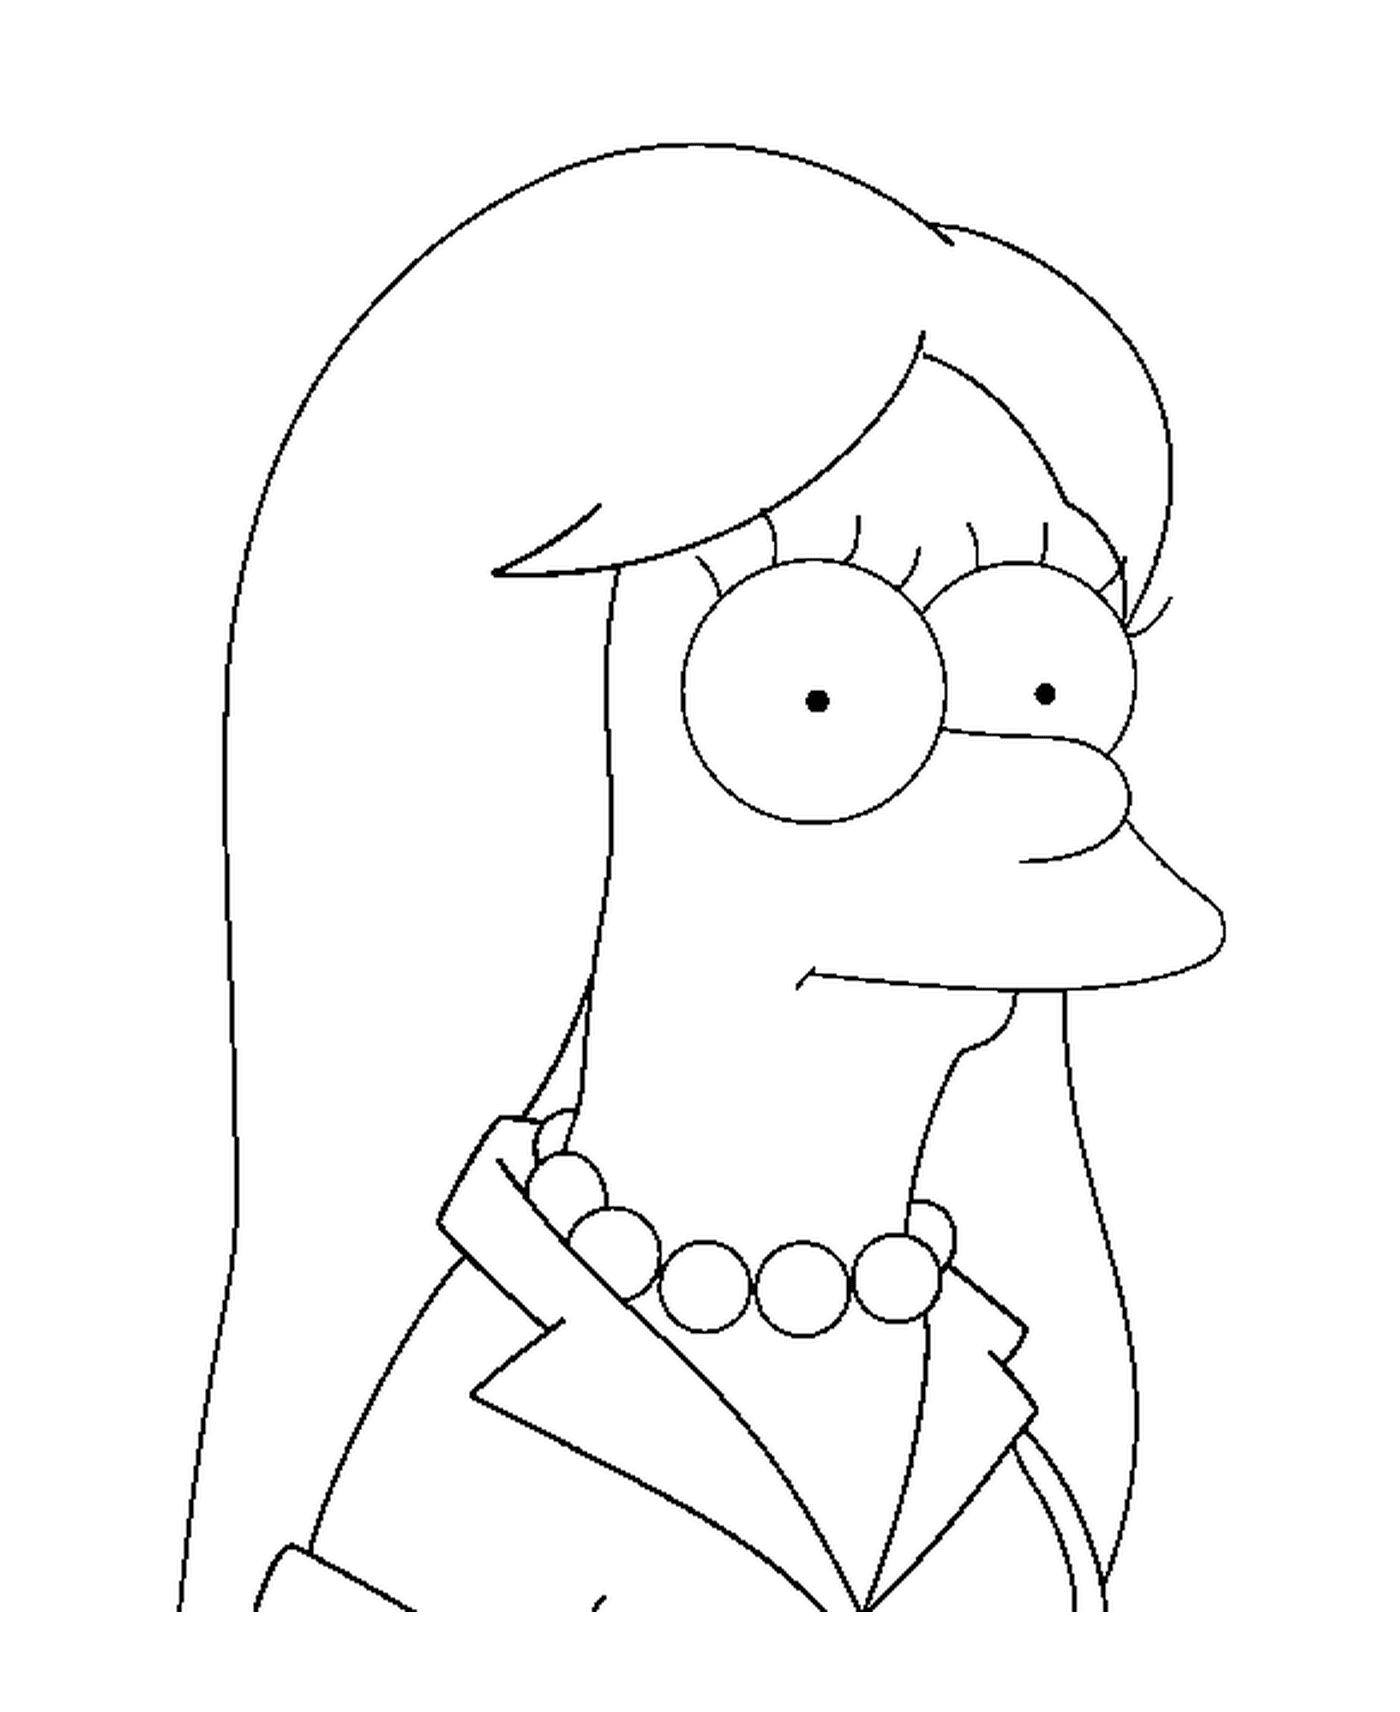  Marge Simpson capelli piatti 